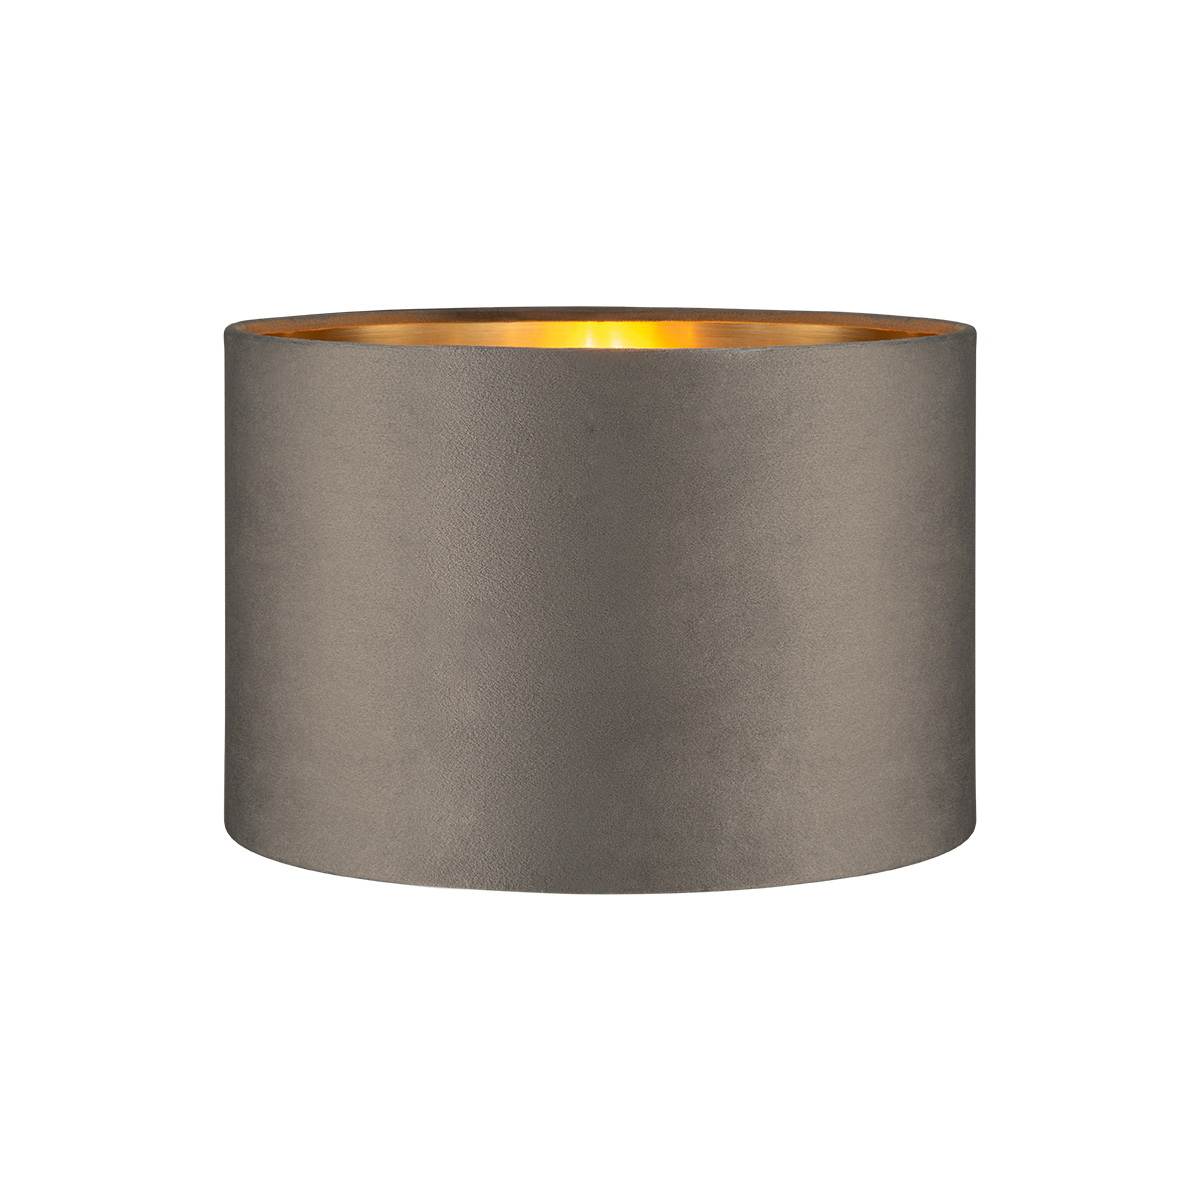 Tangla lighting - TLS7564-30GY - Lampshade - velvet - grey - diameter 30cm - E27